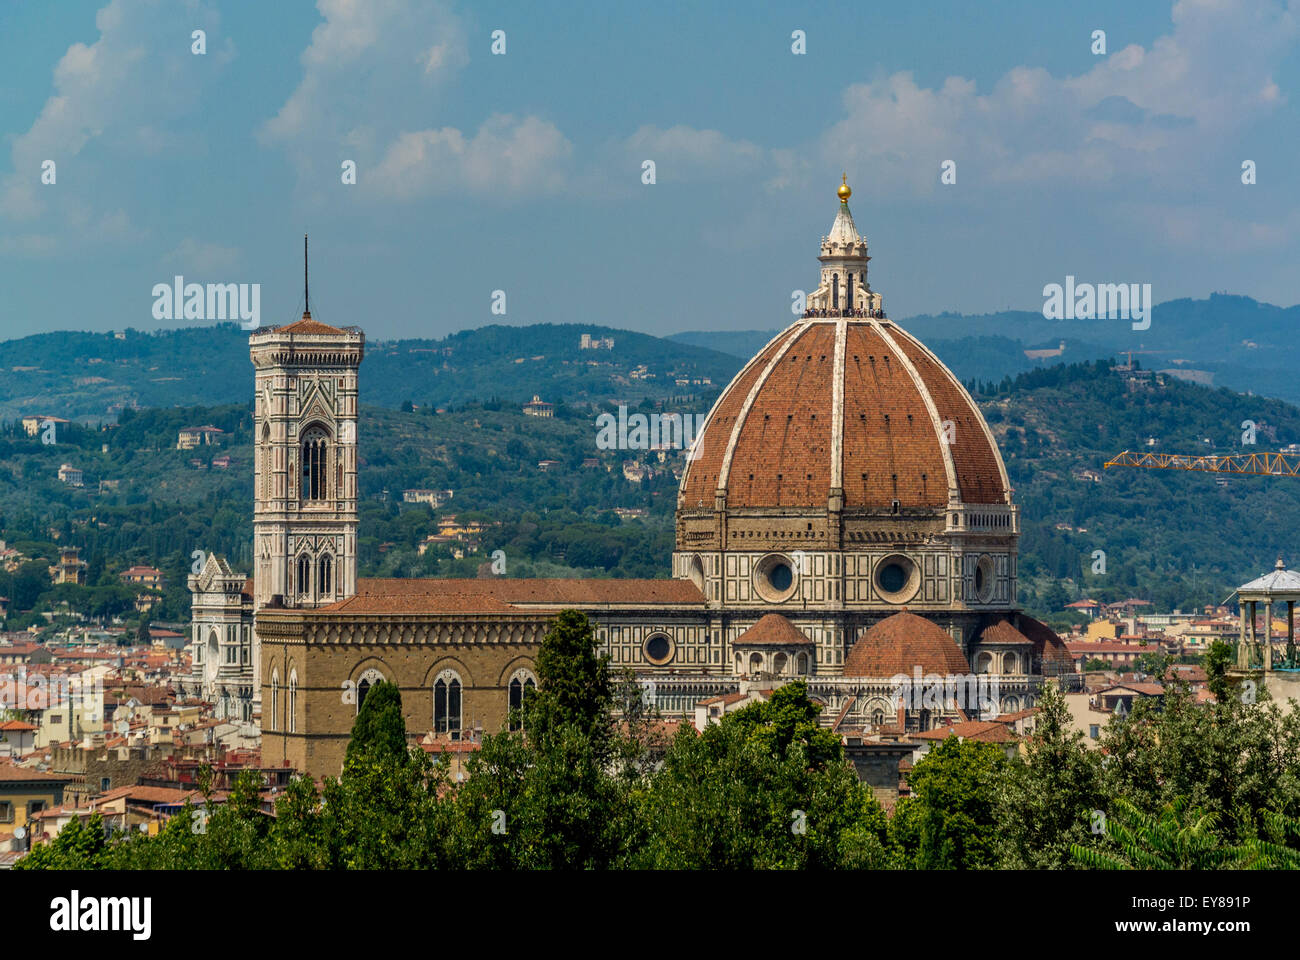 Duomo o Duomo di Firenze con cupola disegnata da Filippo Brunelleschi. Firenze, Italia. Foto Stock